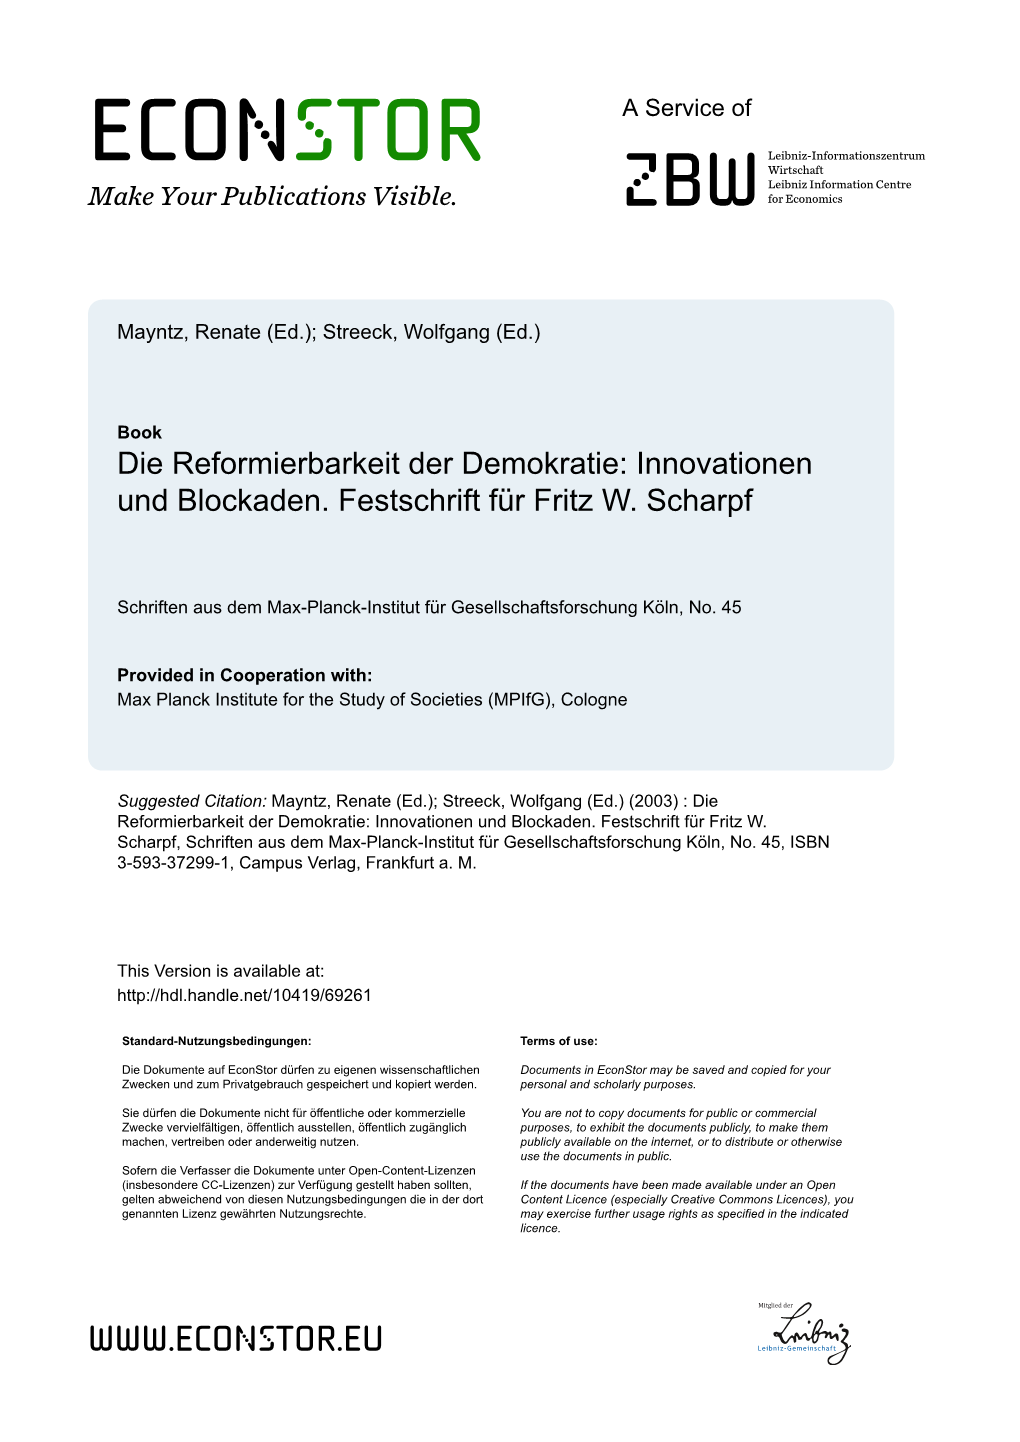 Die Reformierbarkeit Der Demokratie: Innovationen Und Blockaden